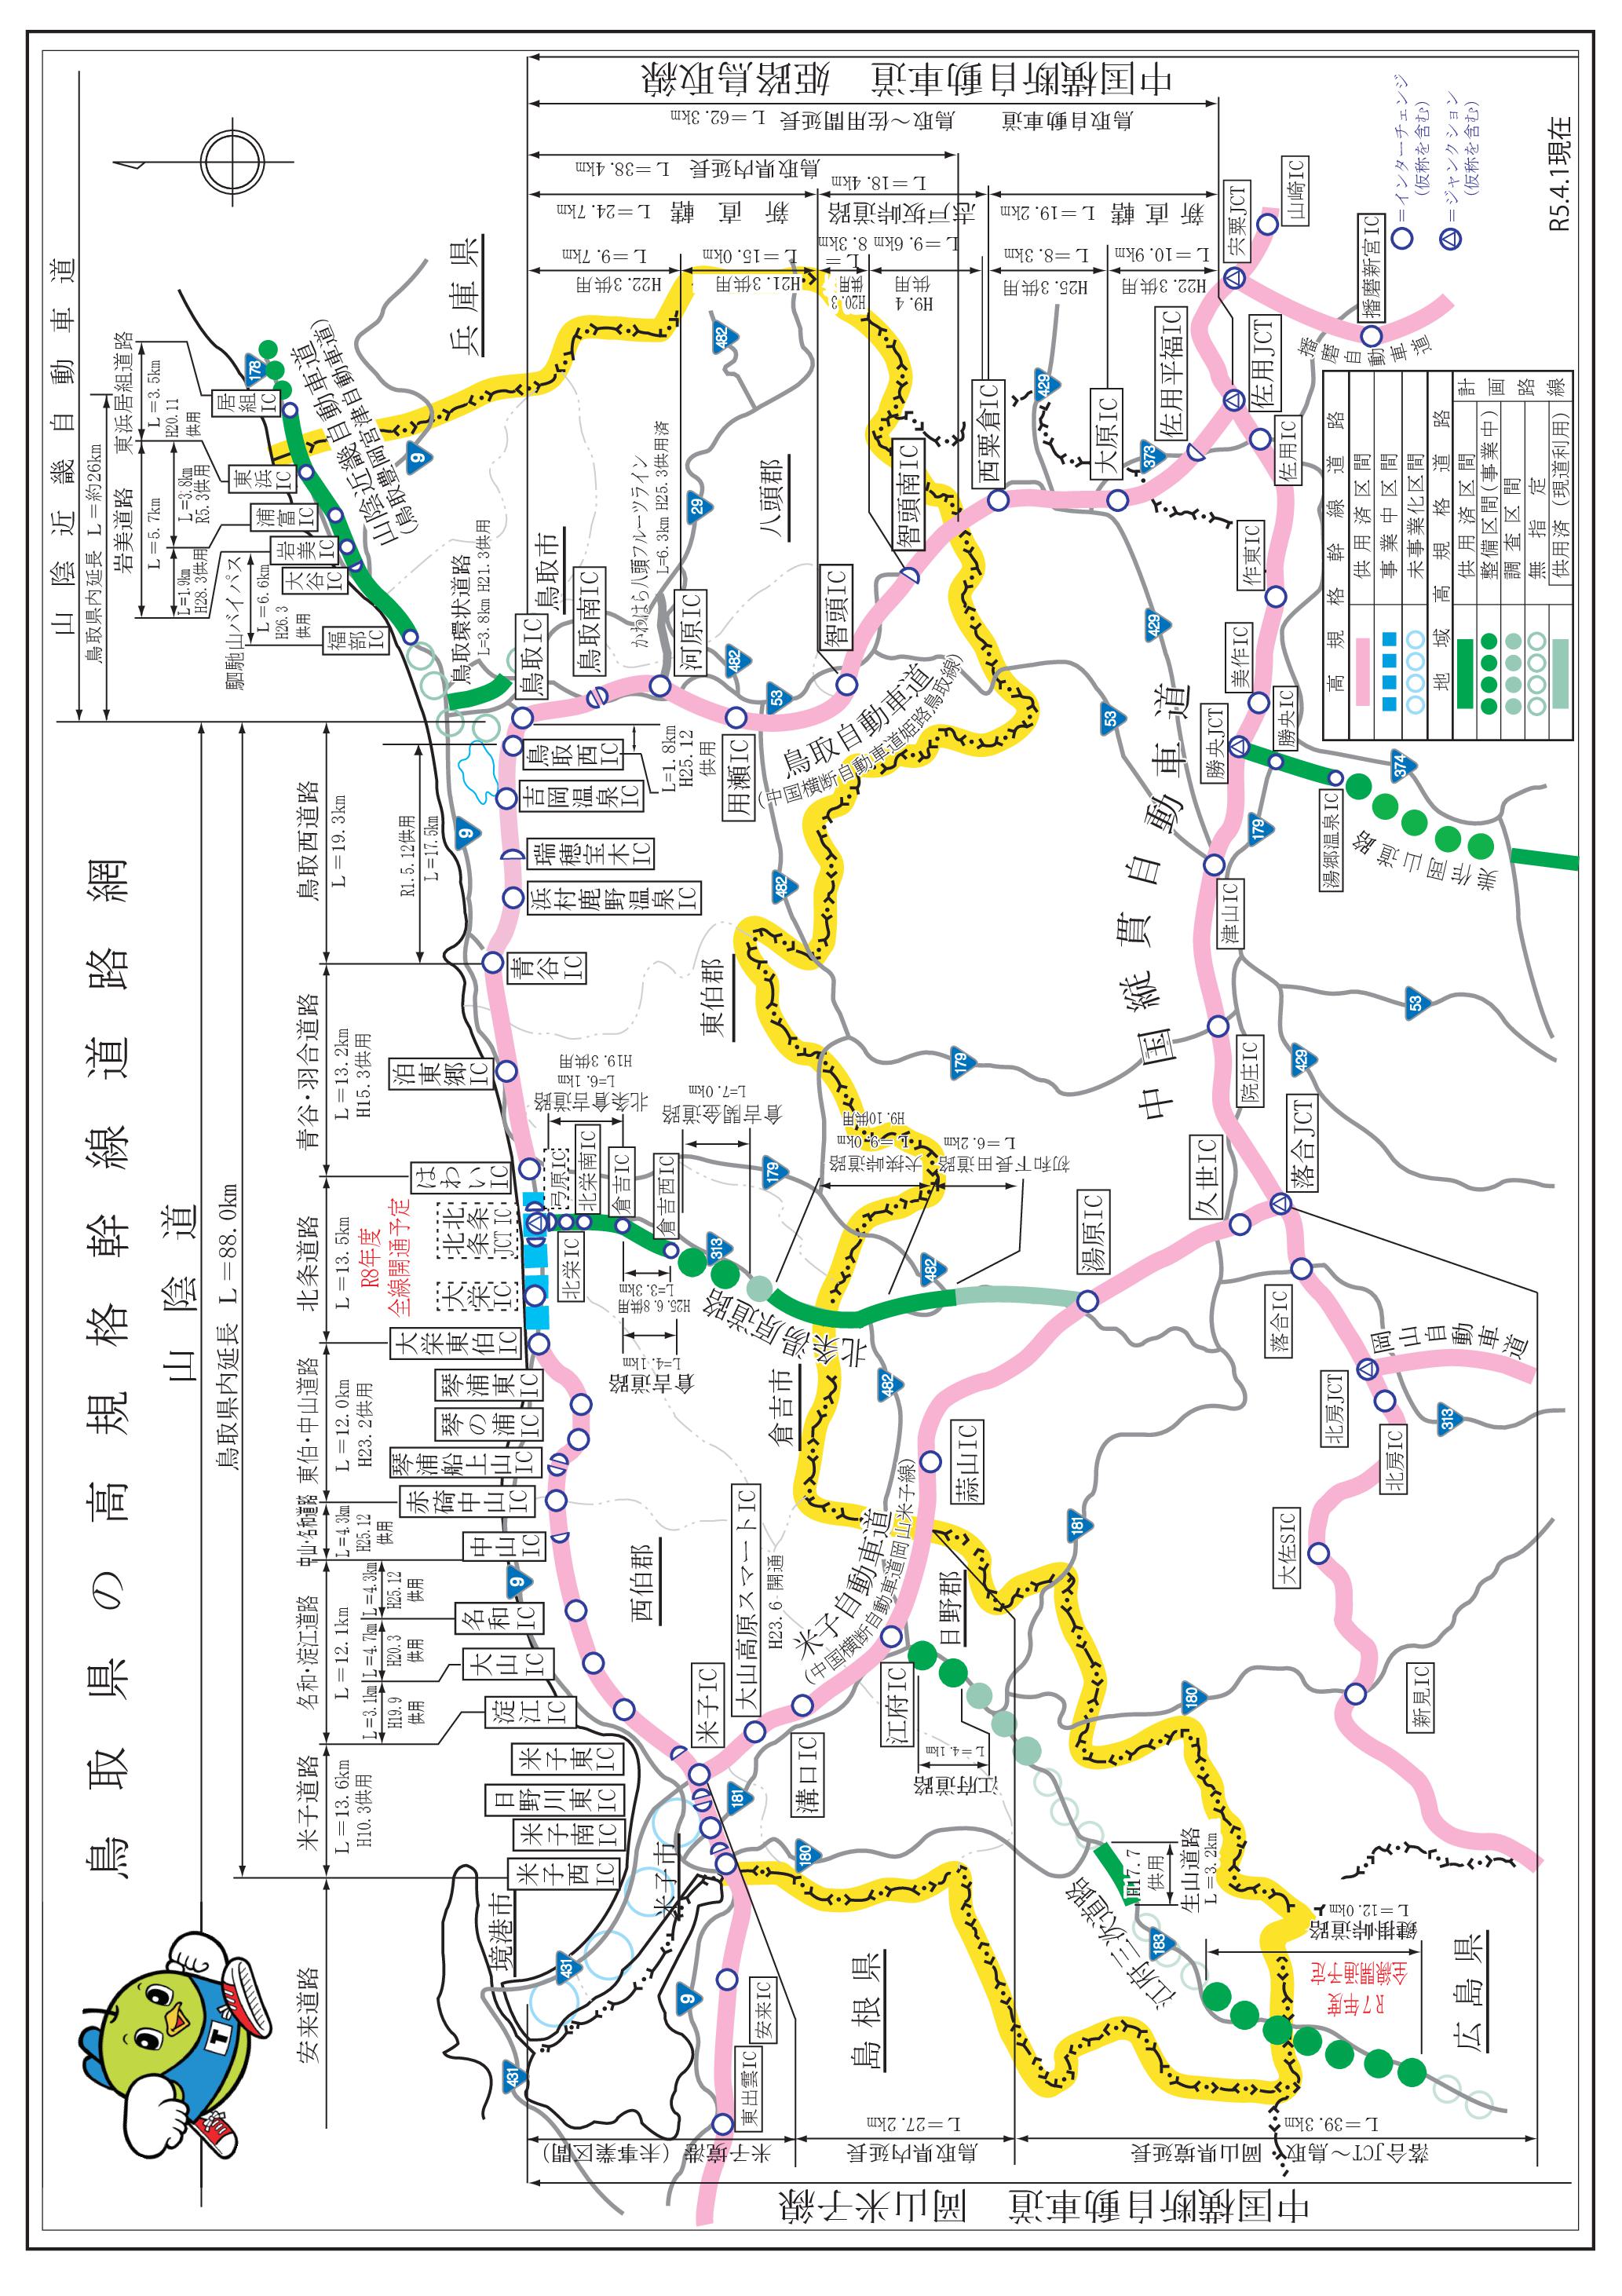 鳥取県の高規格幹線道路網図